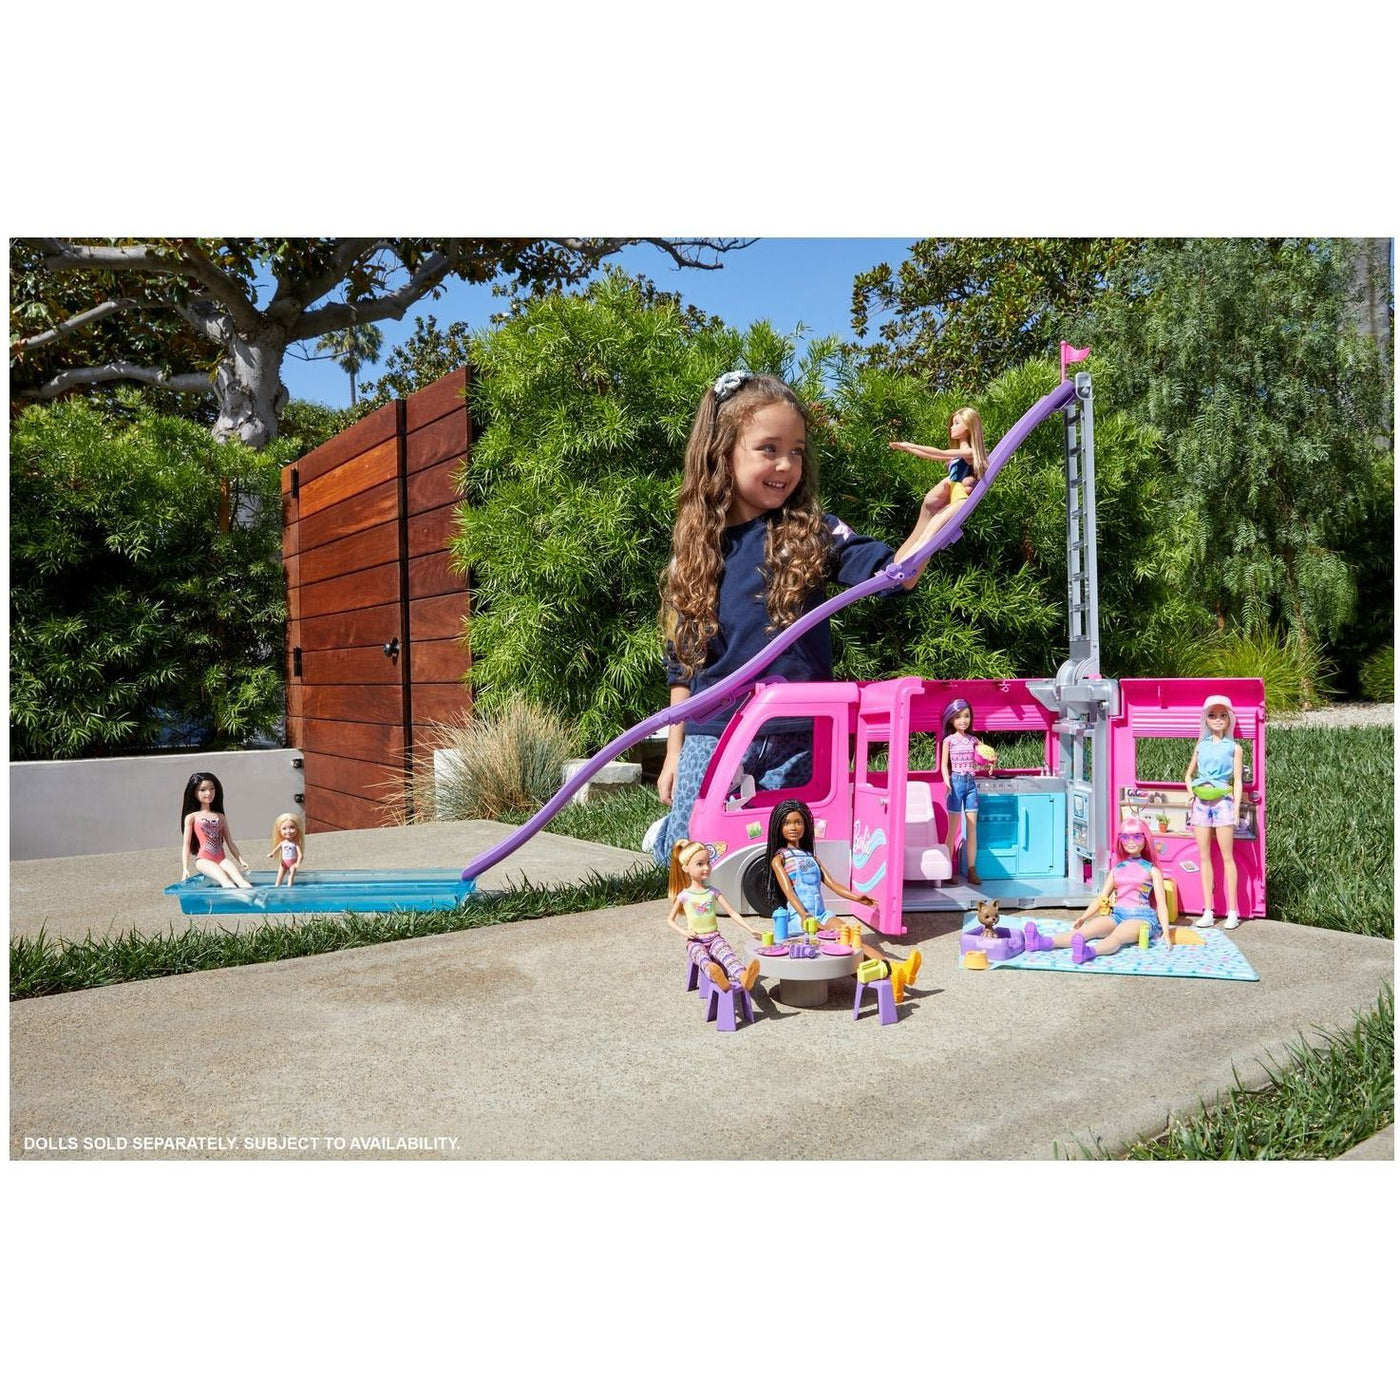 Barbie Dreamcamper-Dolls, Playsets & Toy Figures-Mattel-Yes Bebe